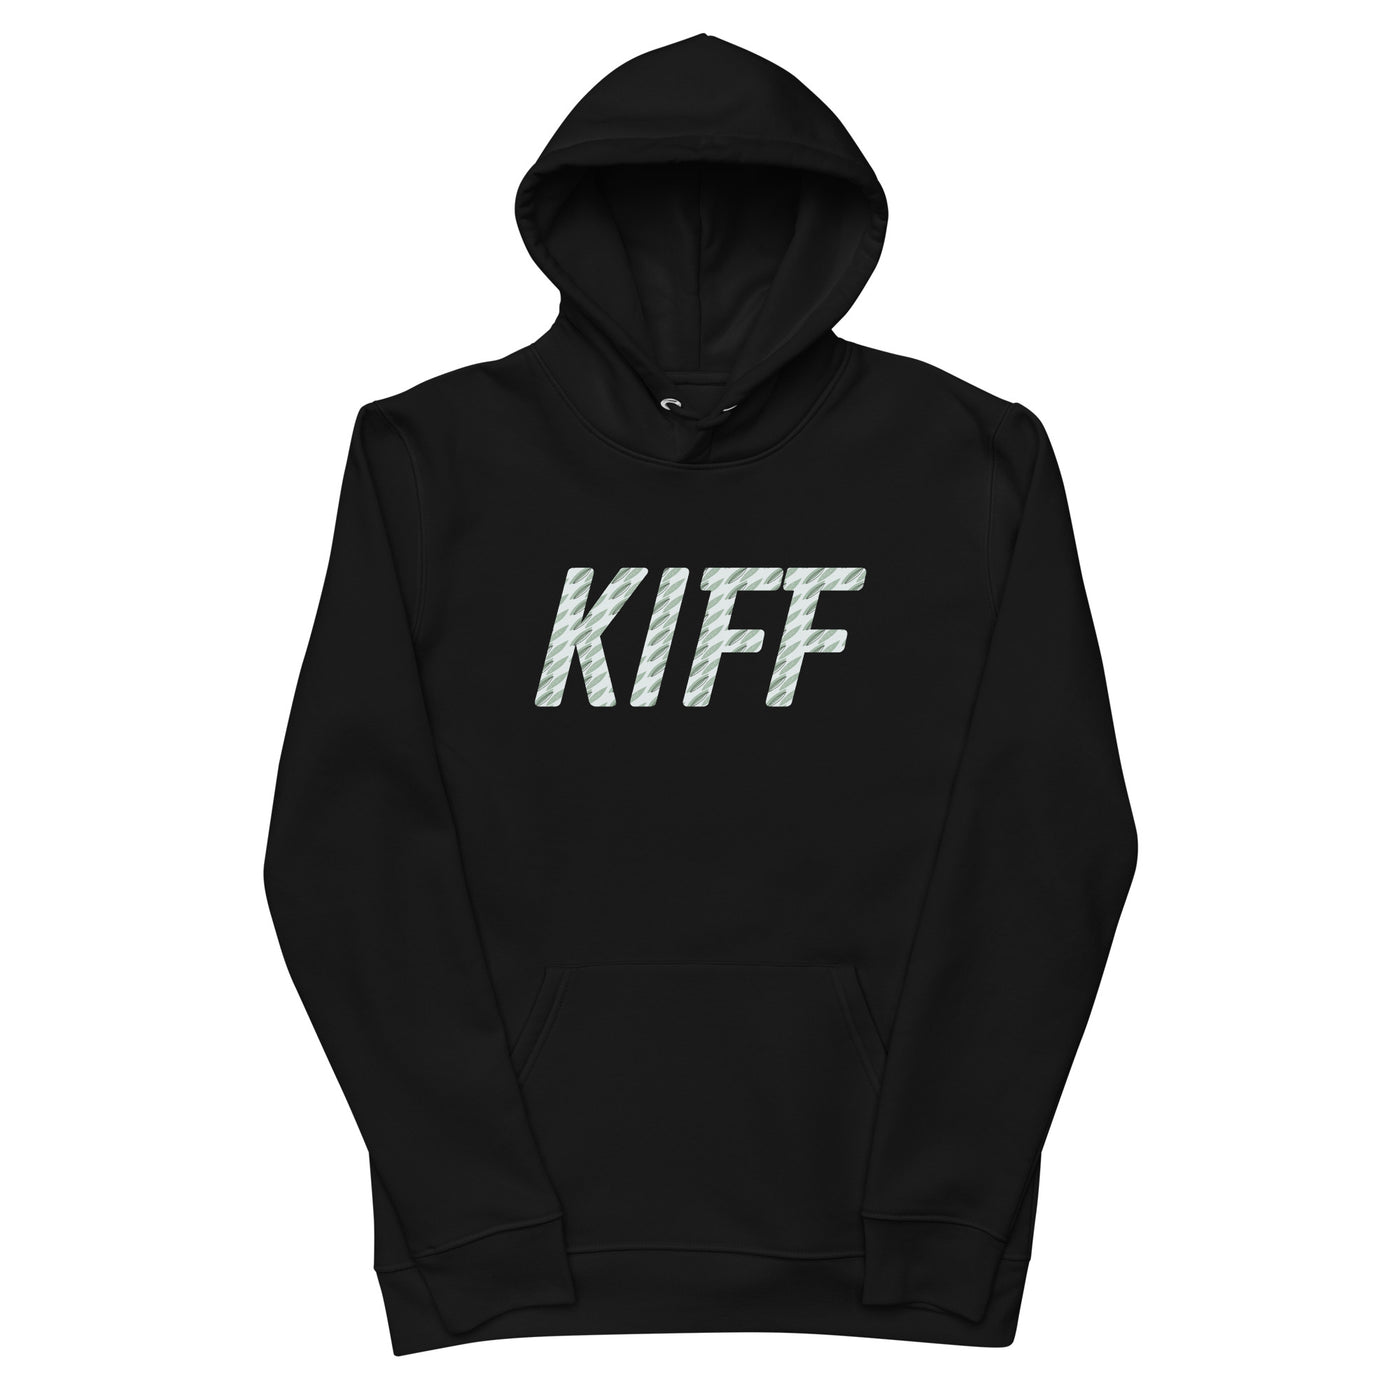 Black Kiff hoodie